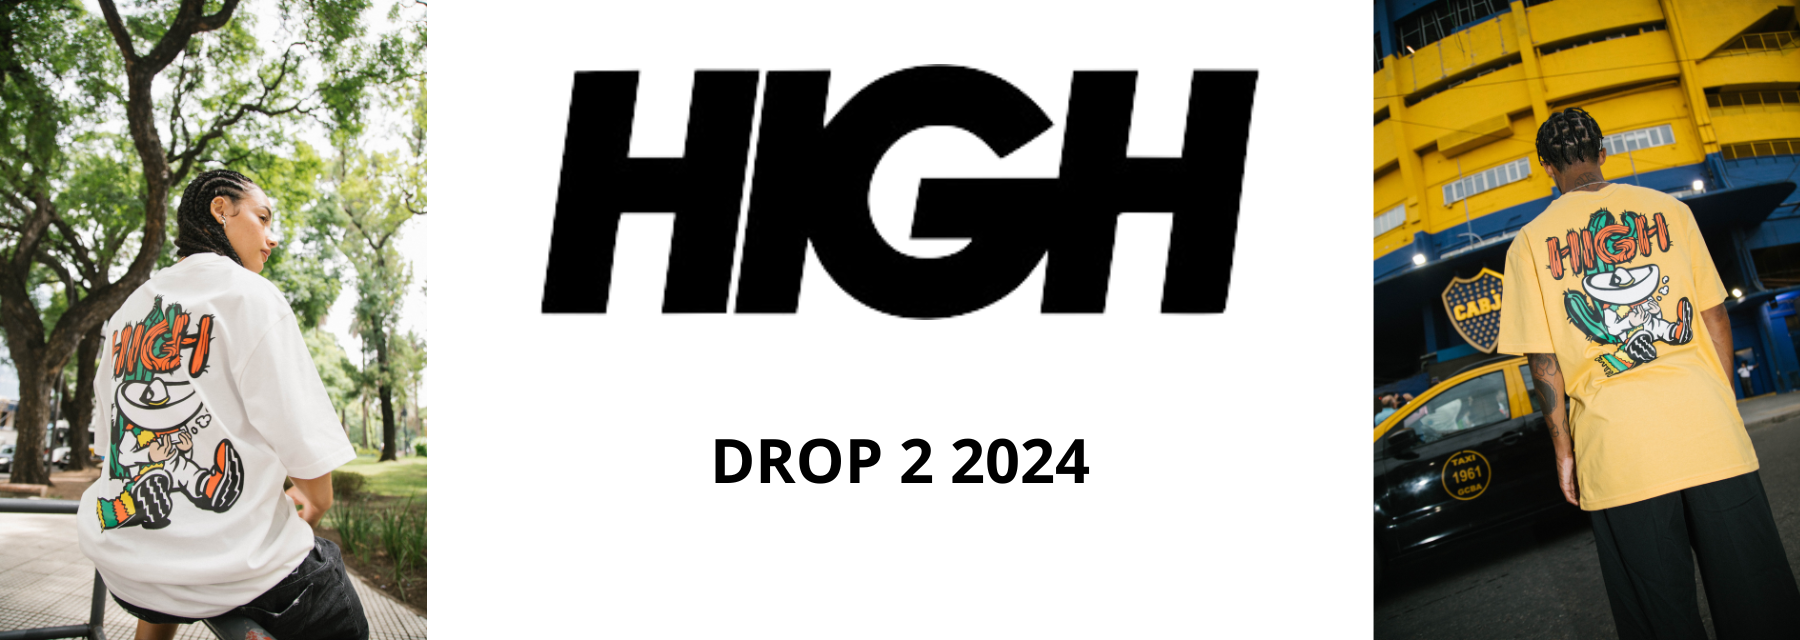 High 2 24